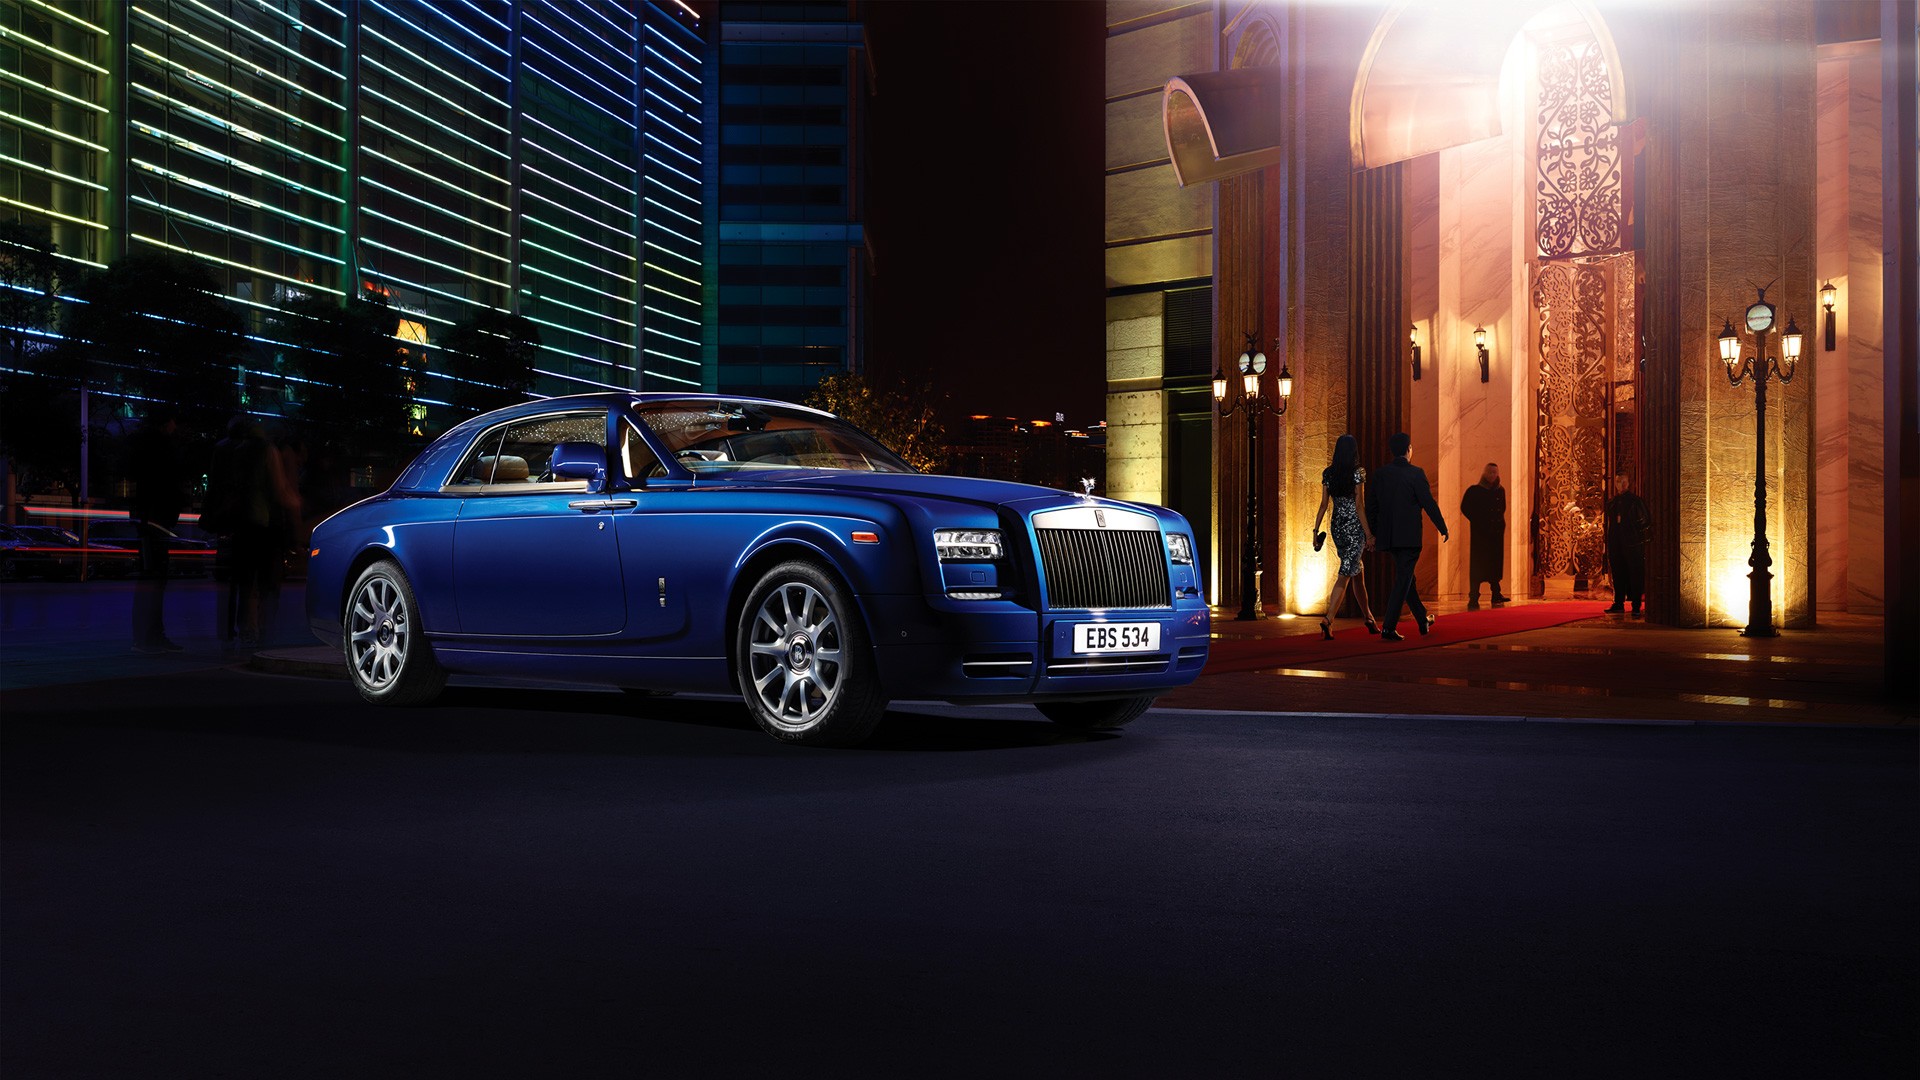 Télécharger des fonds d'écran Rolls Royce Phantom Coupé HD